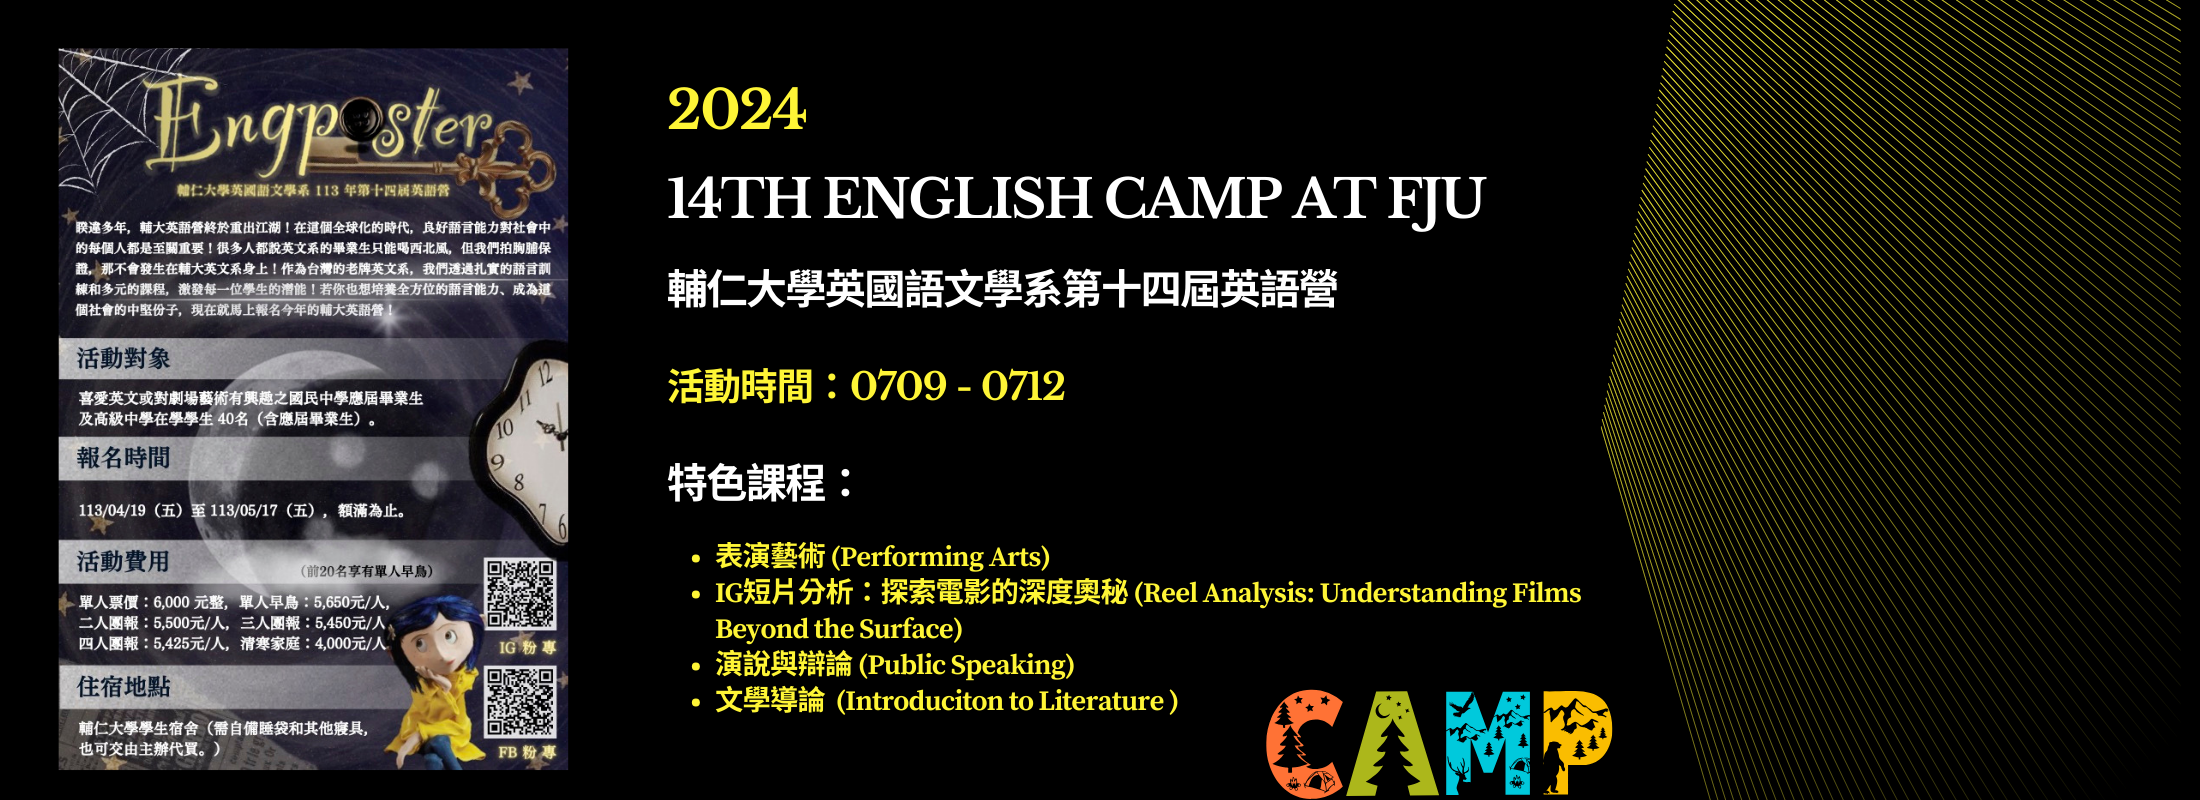 14TH English camp at fju